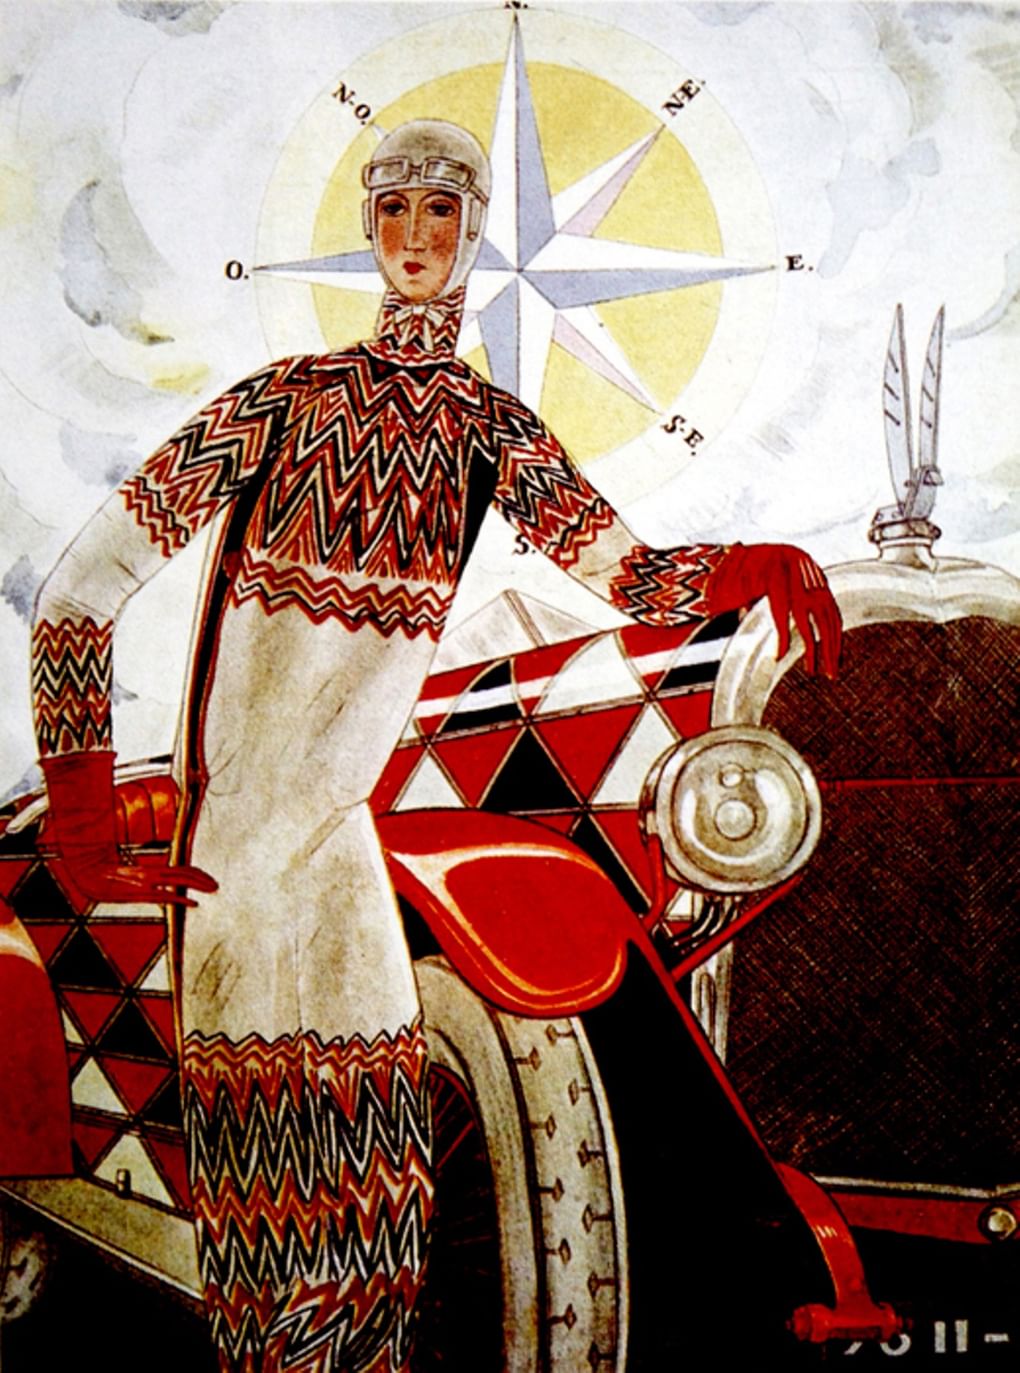 Обложка журнала Vogue с «оптическим» платьем от С. Делоне. 1925. Пресс-служба Музеев Кремля